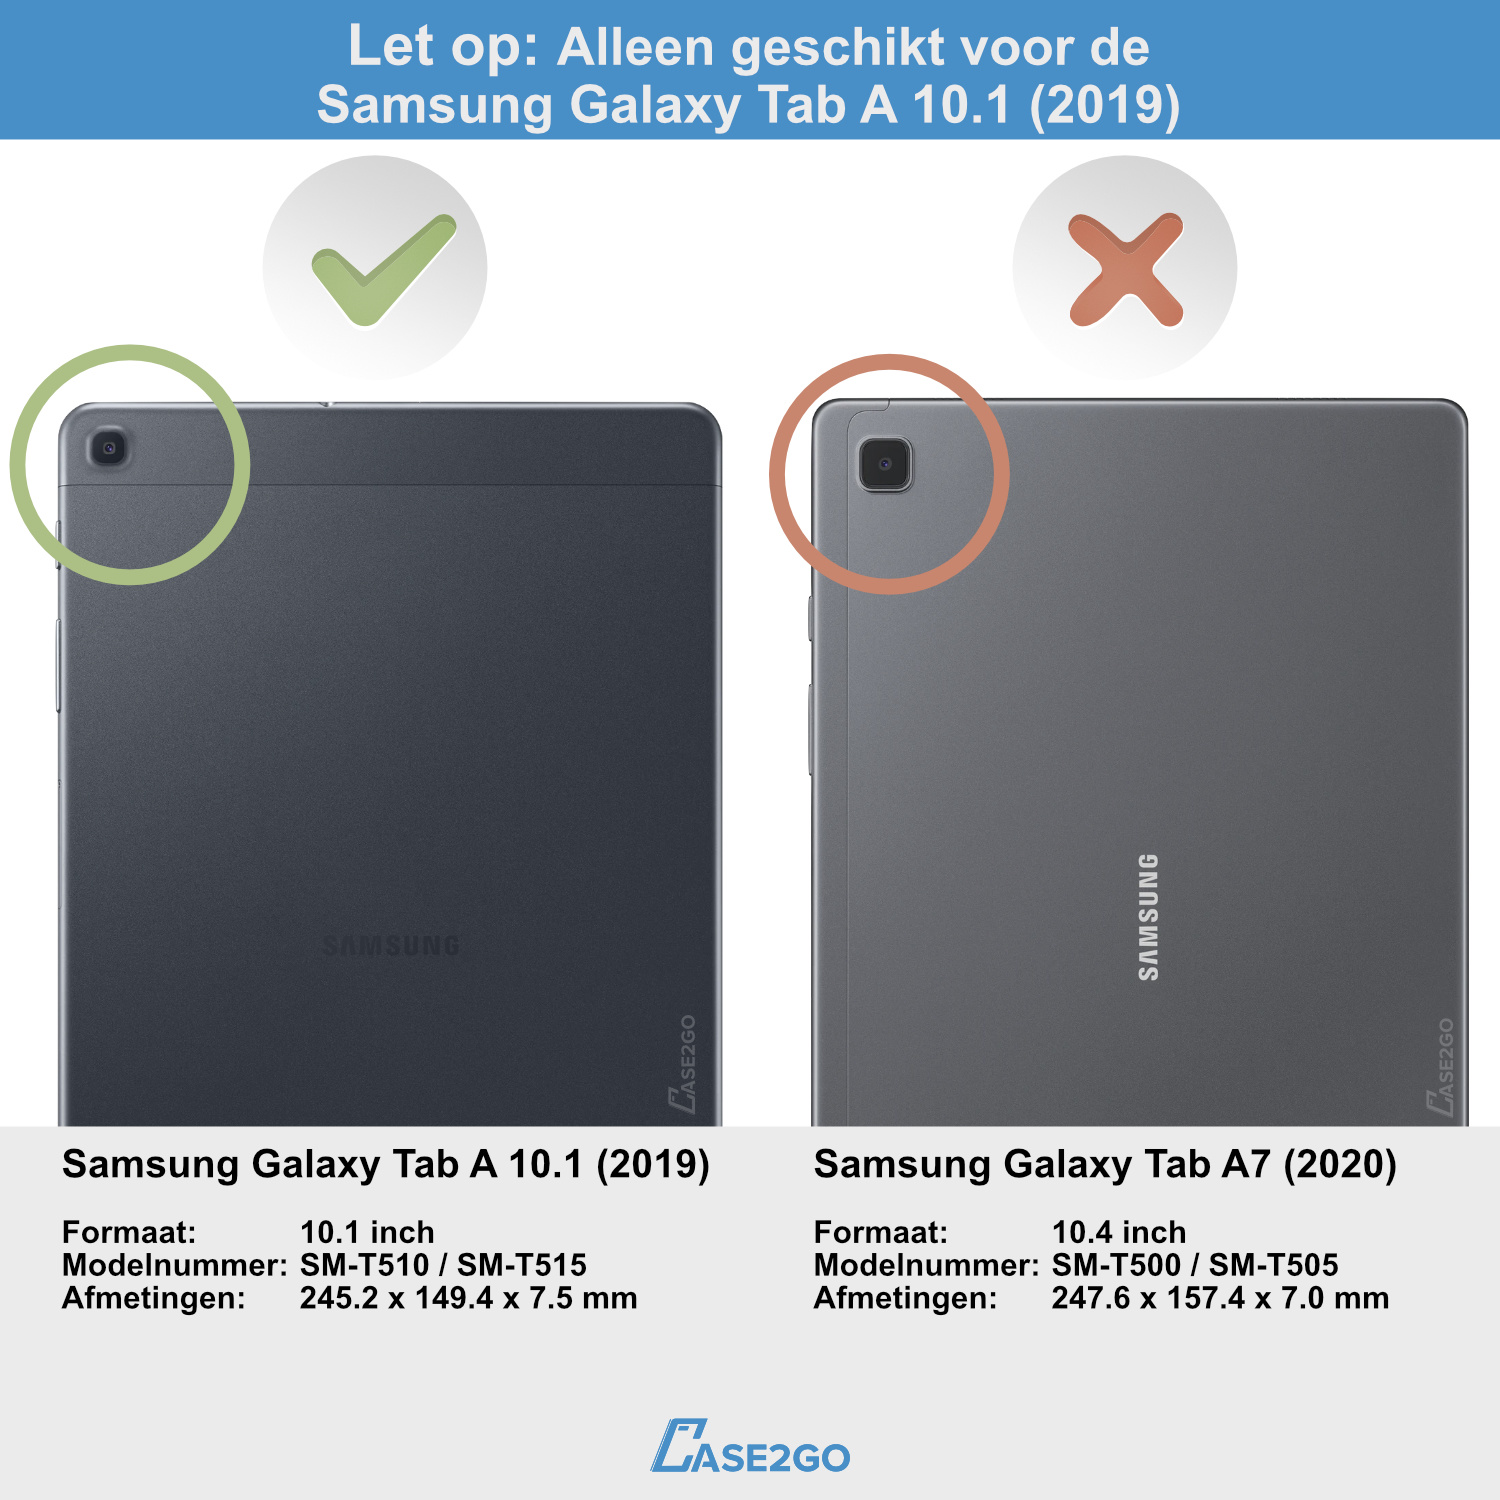 Galaxy Tab A 2019 - Bluetooth toetsenbord + | Case2go.nl